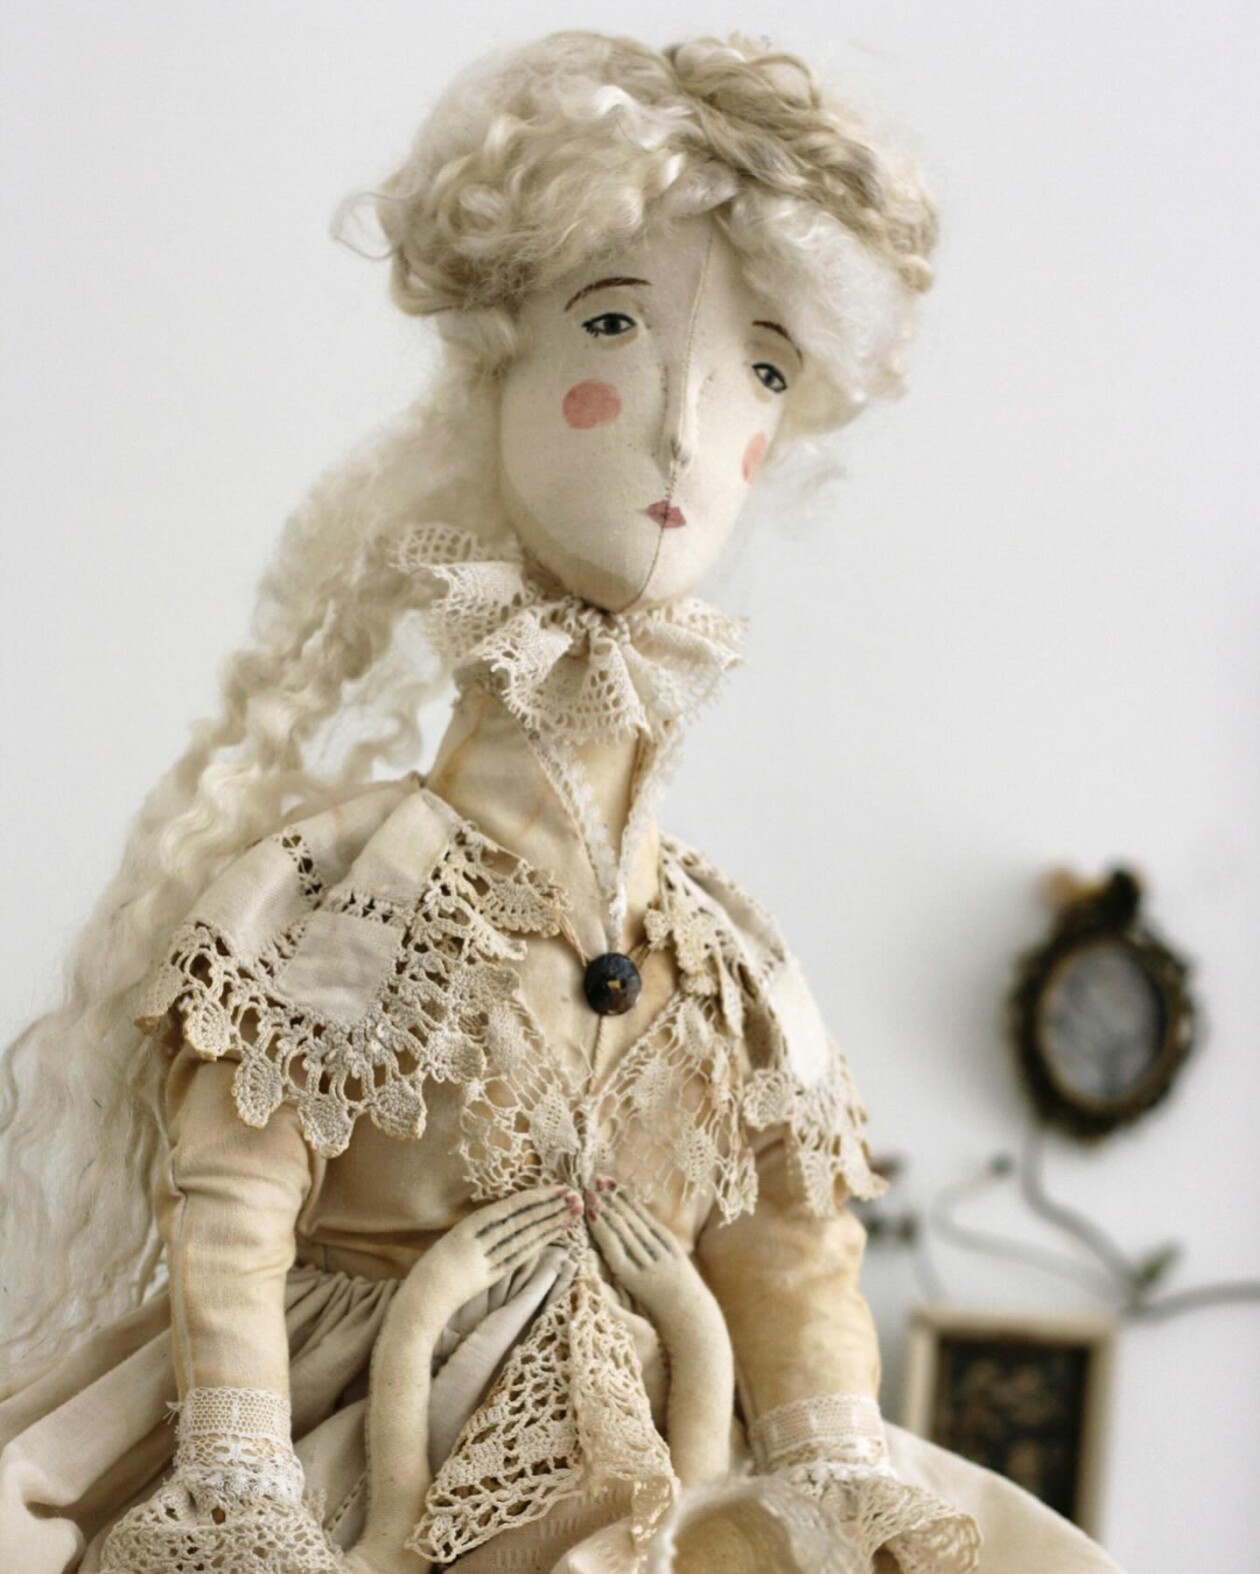 Magical Textile Dolls By Anouk De Groot (9)